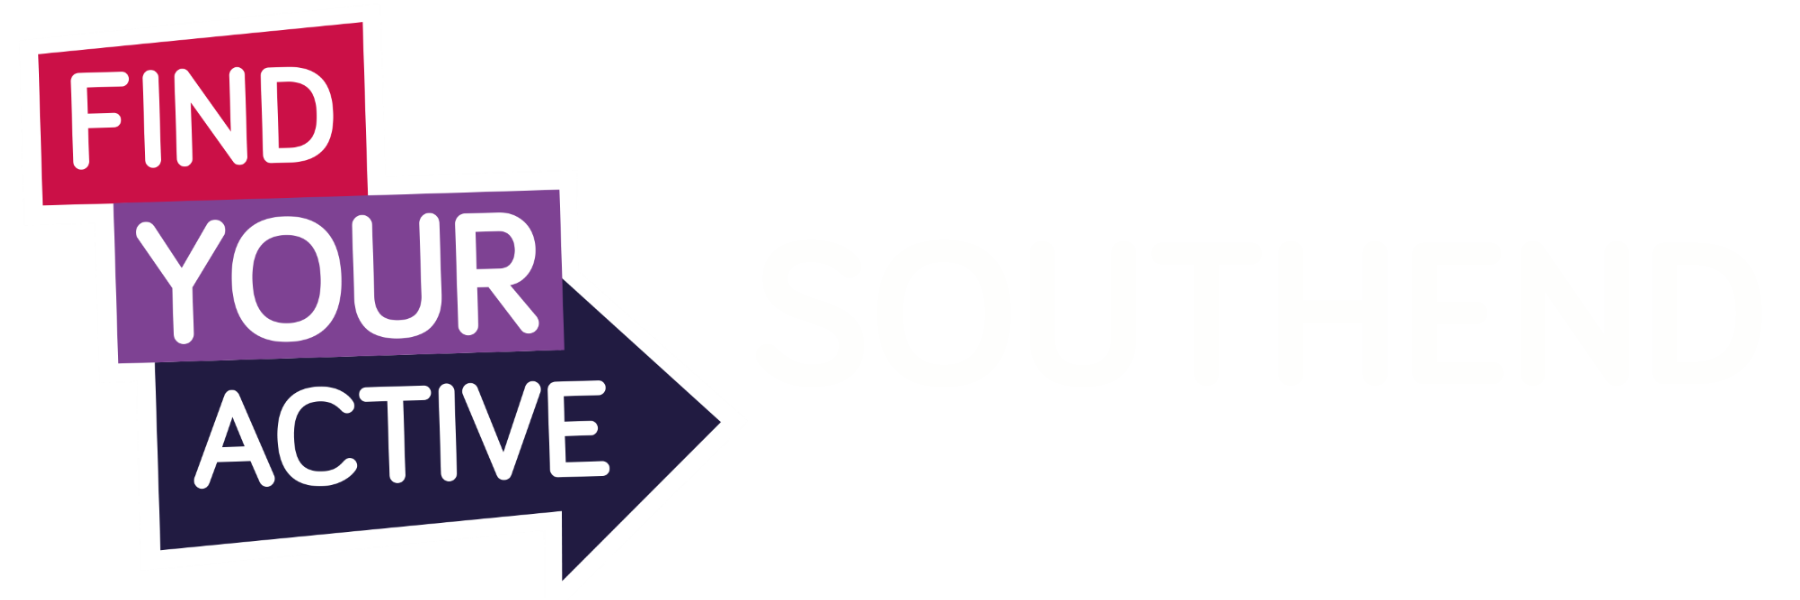 Active Southend logo